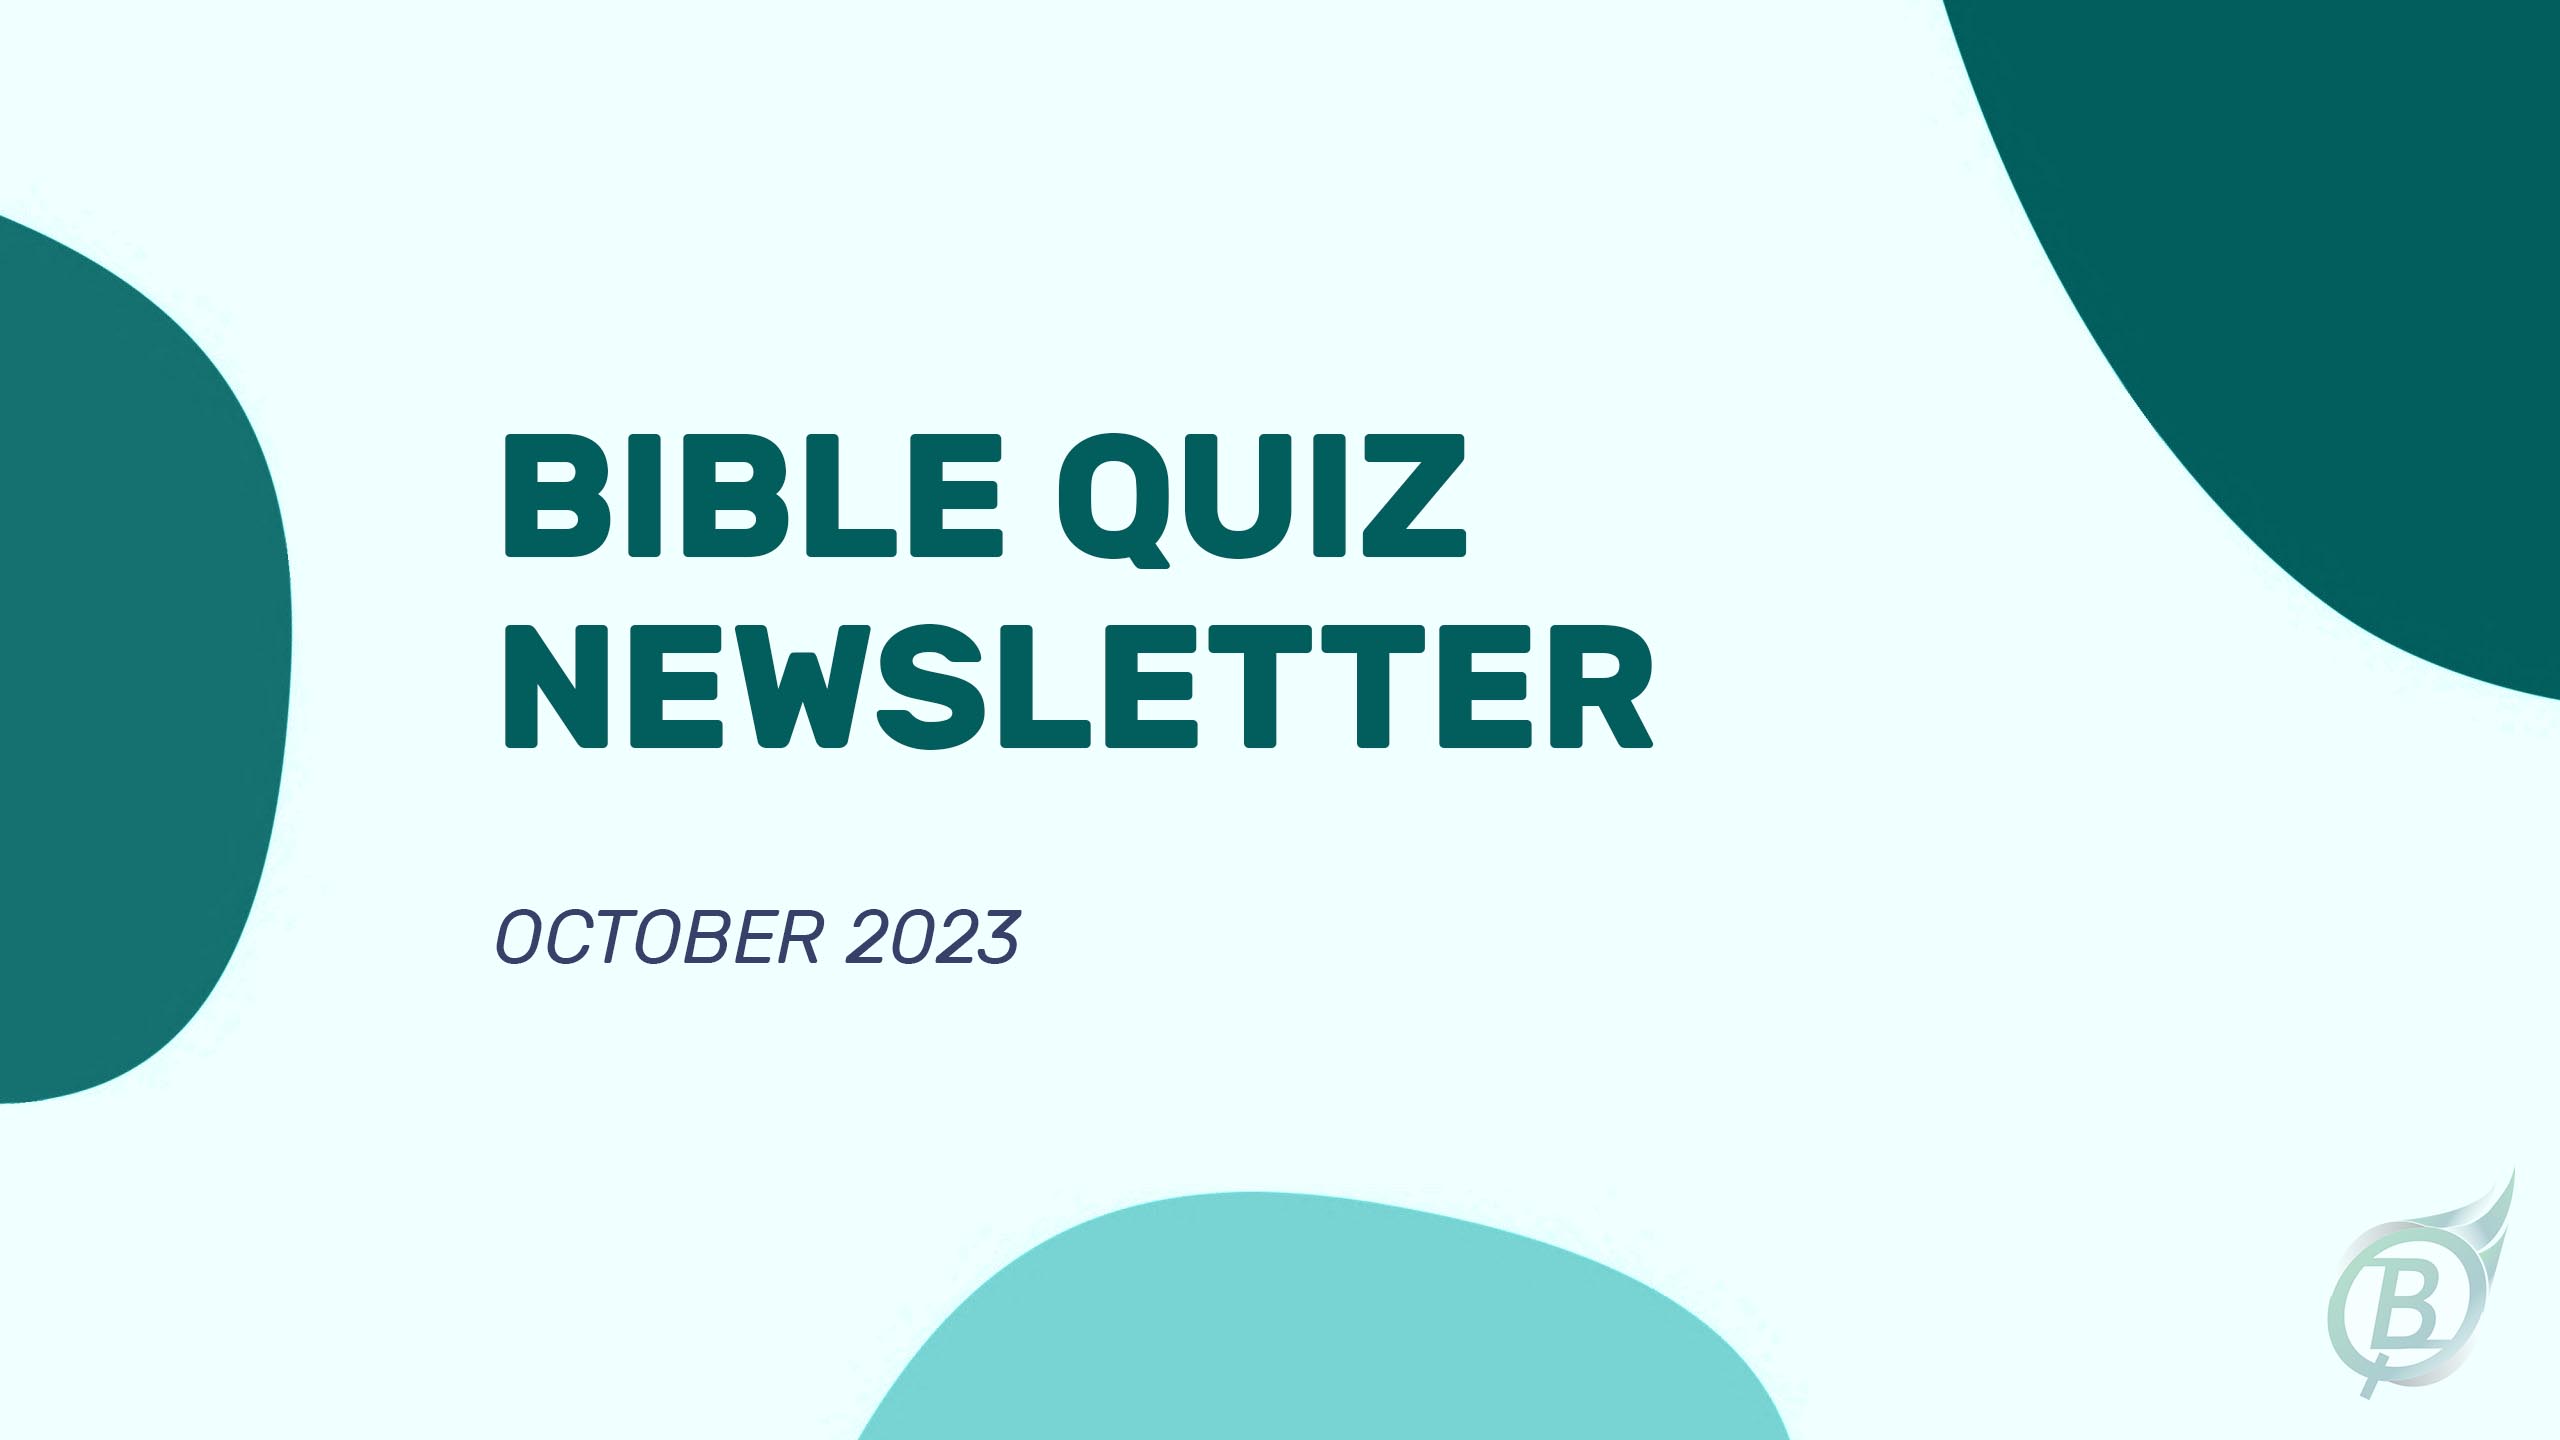 Bible Quiz Newsletter - October 2023